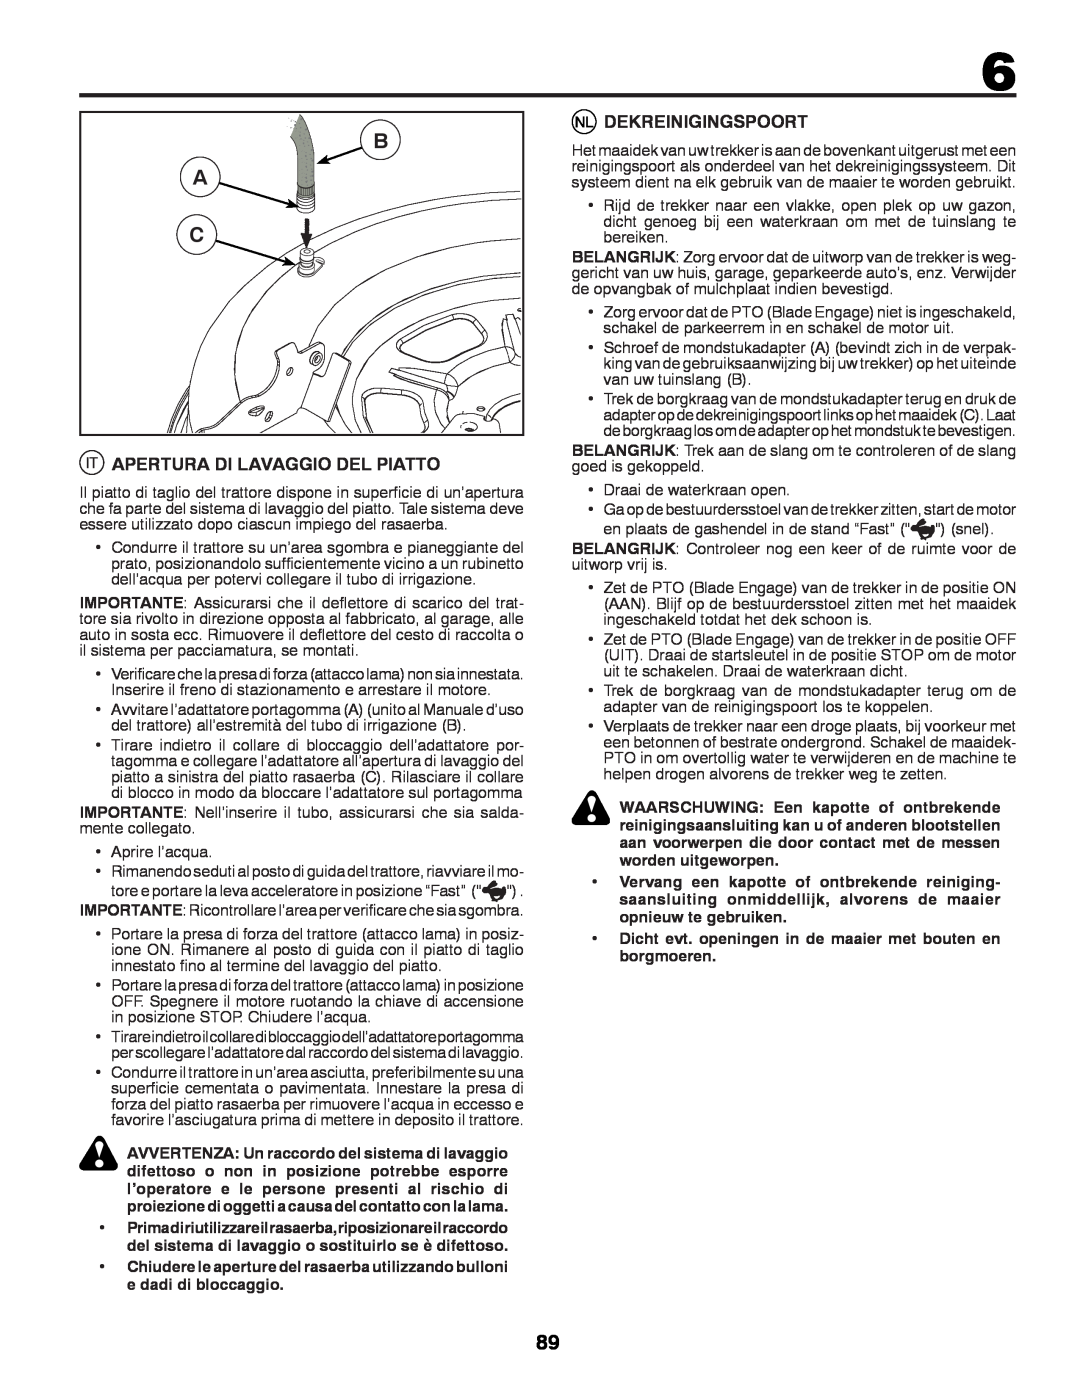 McCulloch M11577HRB, 96041012400 instruction manual Apertura Di Lavaggio Del Piatto, Dekreinigingspoort 